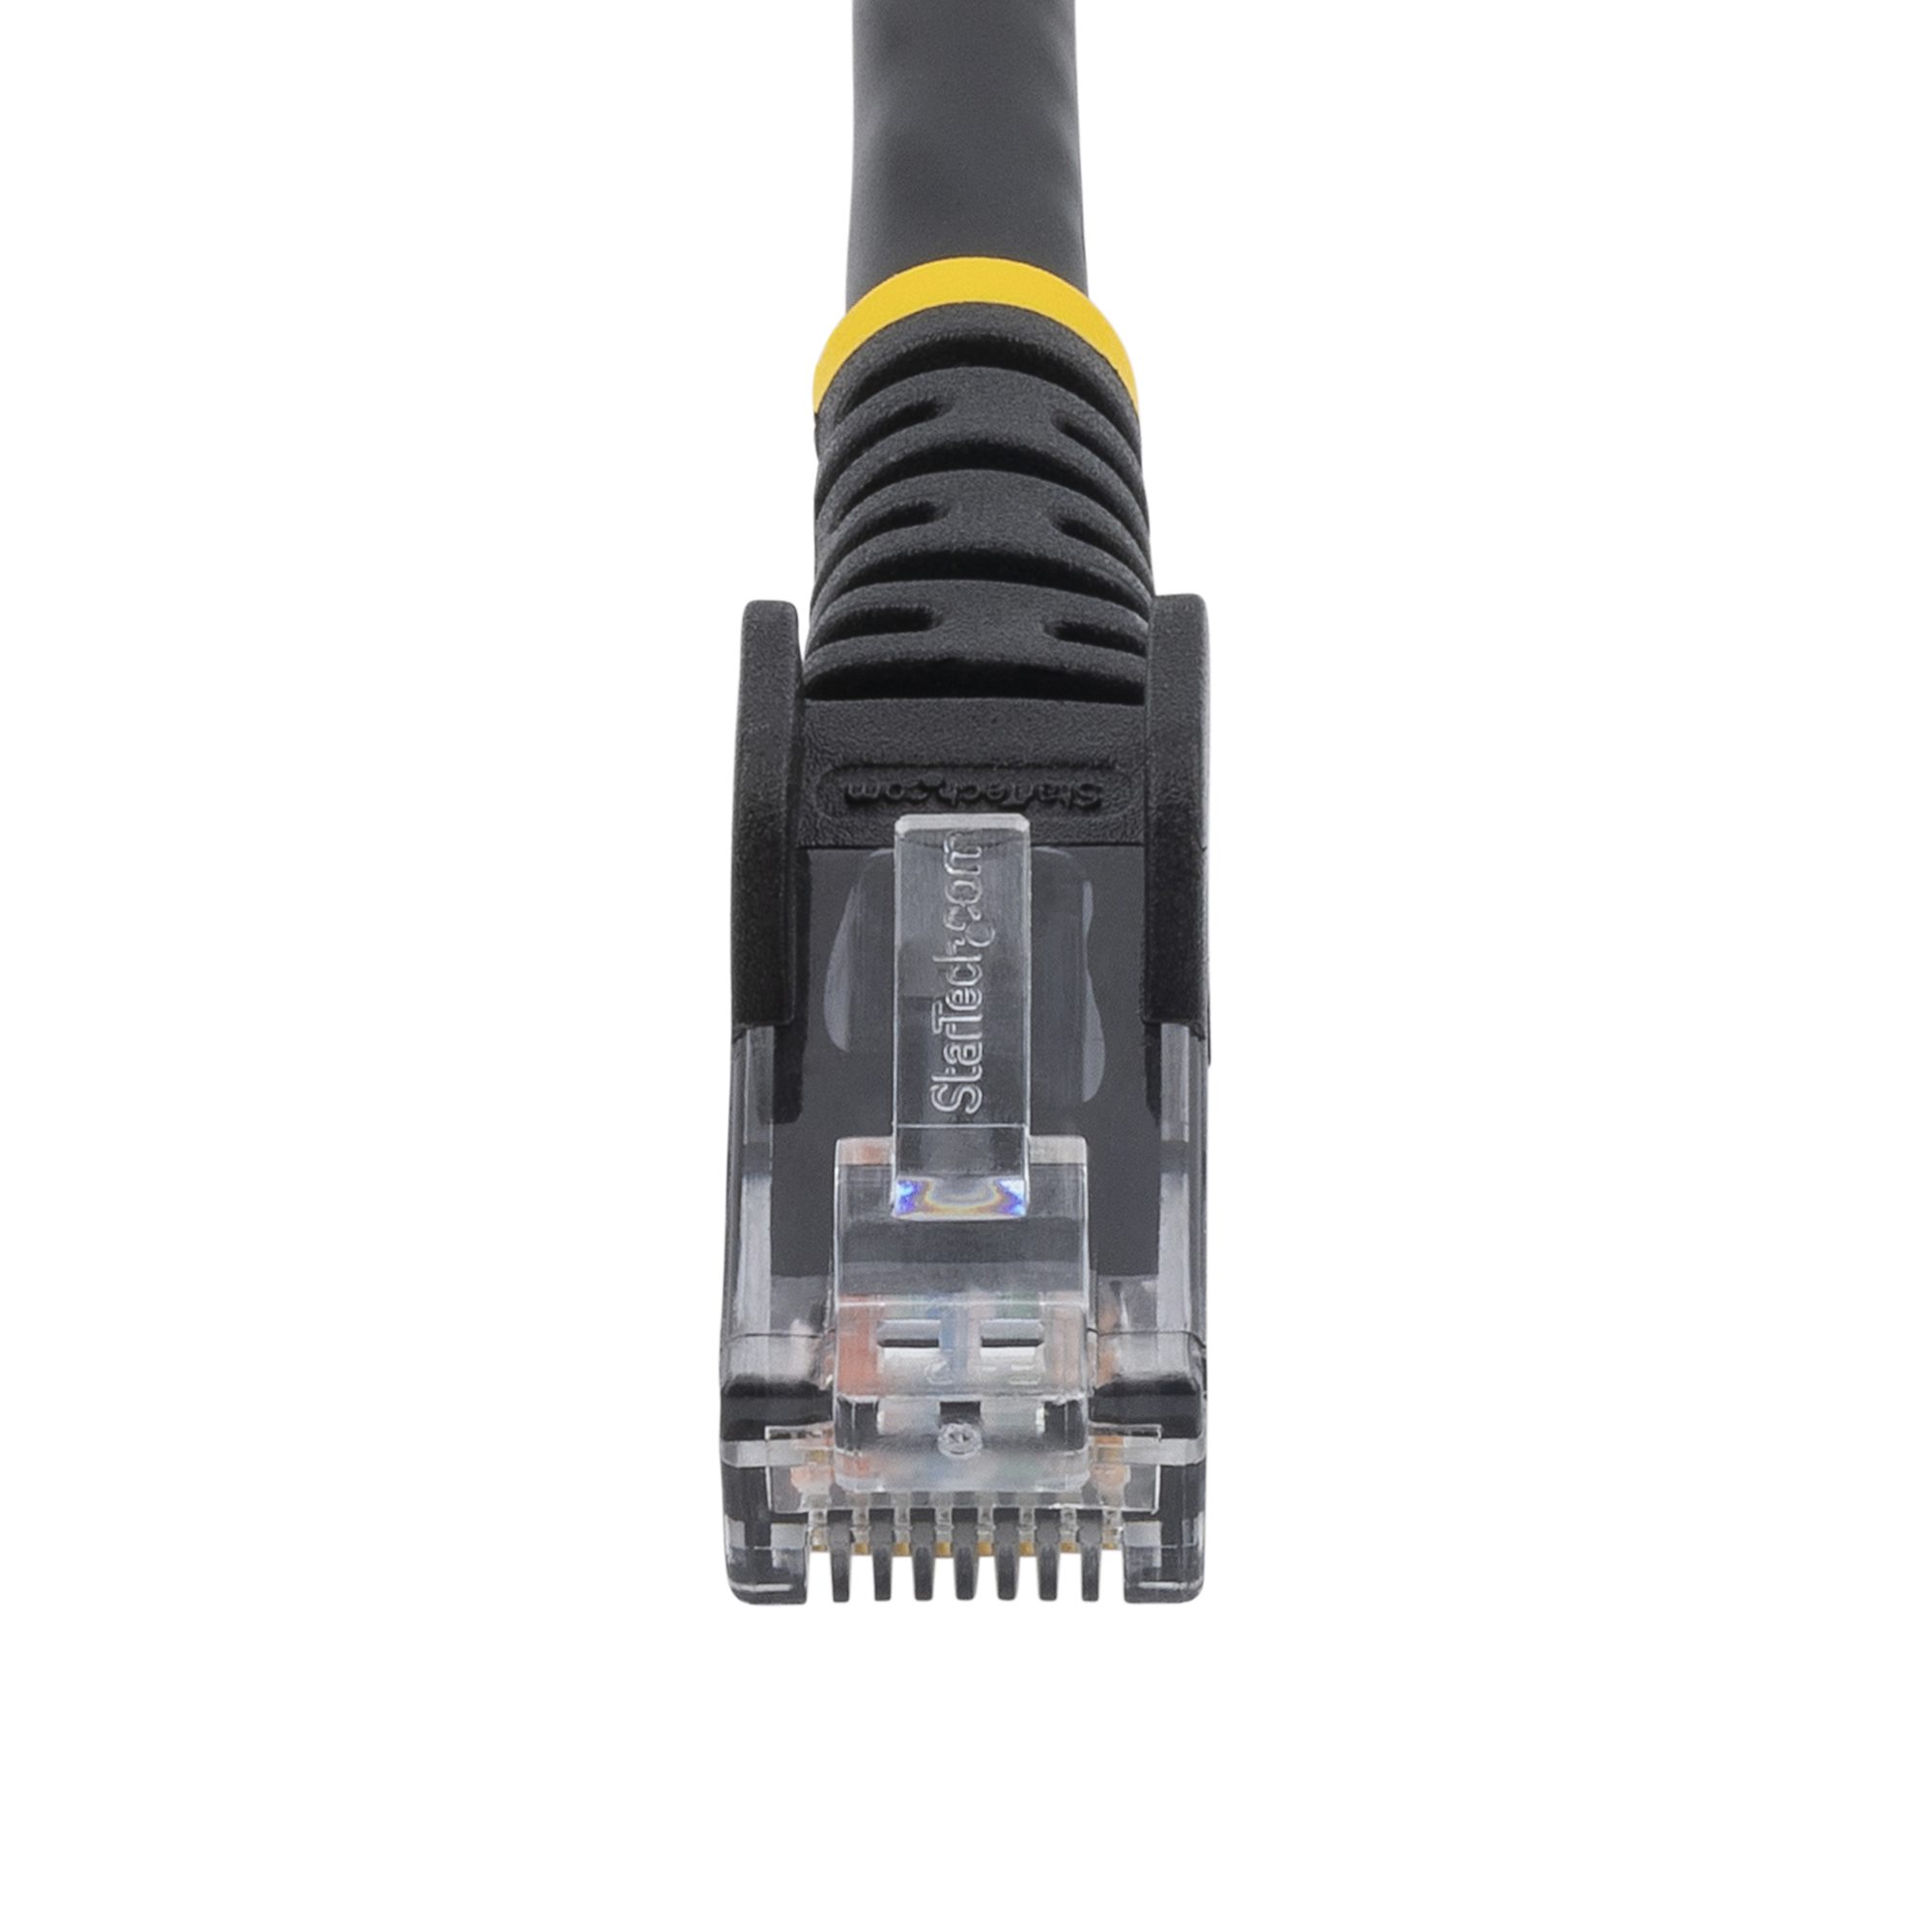 5m LSZH CAT6 Ethernet Cable 10GbE, Black (N6LPATCH5MBK) - Cat 6 Cables, Cables